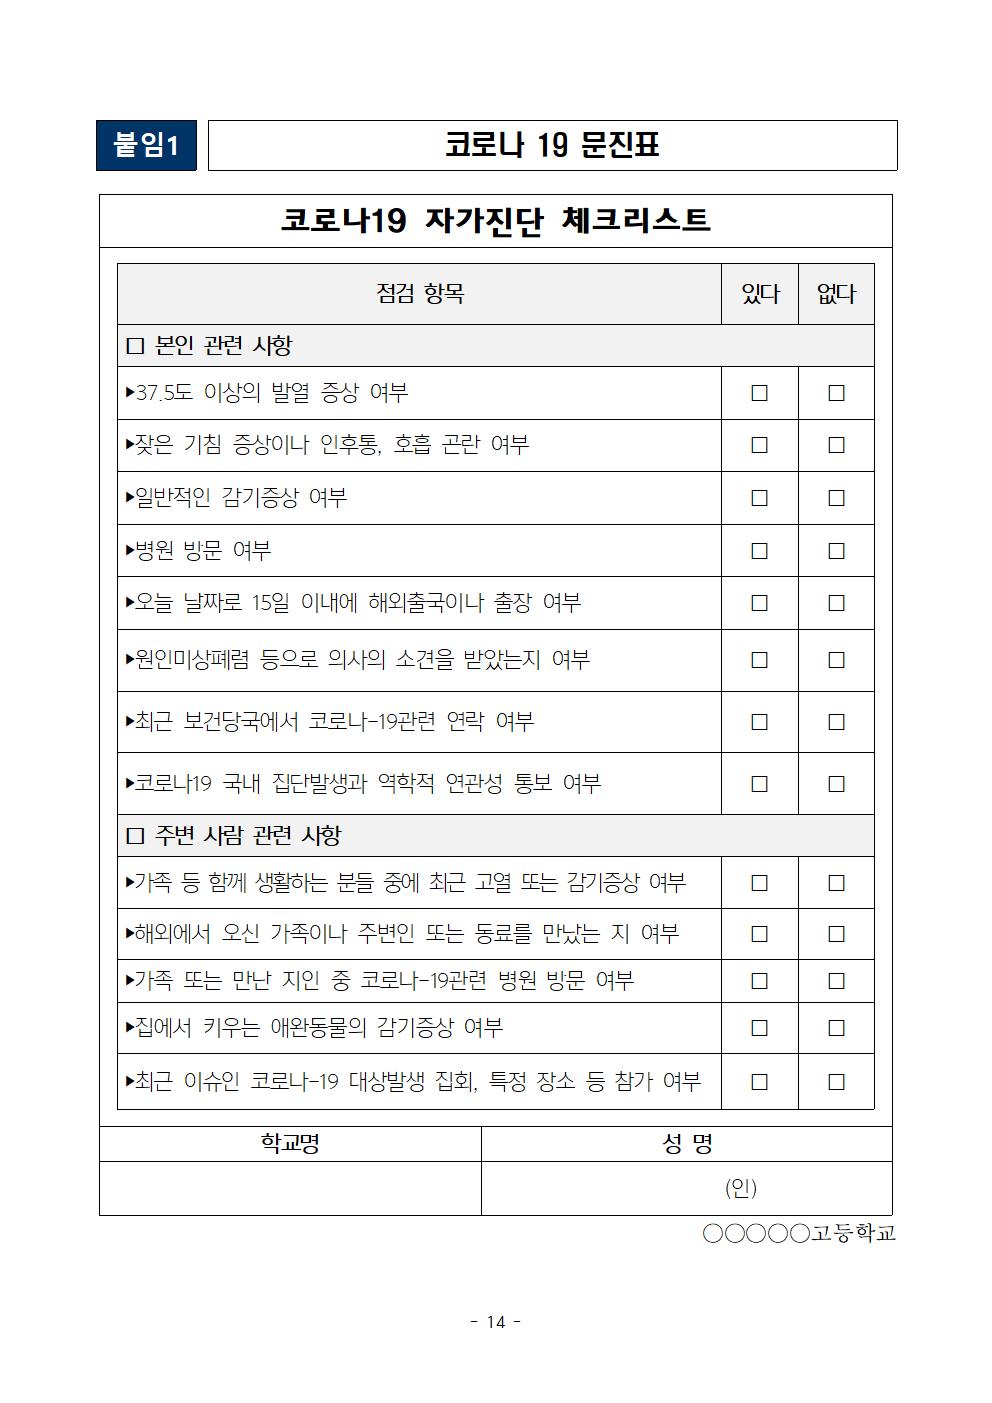 2021학년도 학교별 입학전형 안전관리 계획_한국게임과학고(홈페이지게시)016